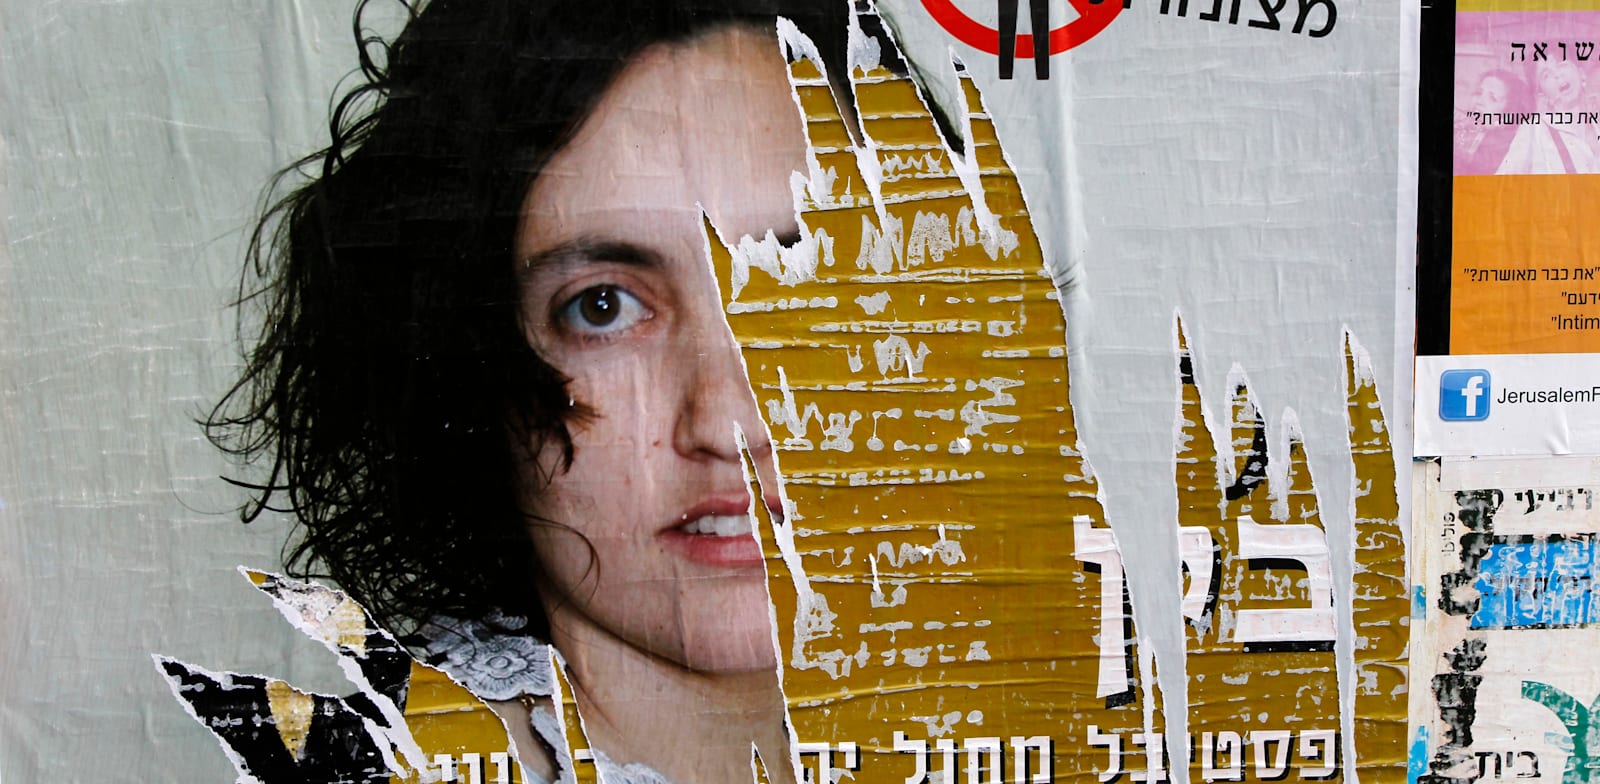 פוסטר שנתלה בירושלים כחלק מהקמפיין להשחתת תמונות של נשים במרחבים ציבוריים